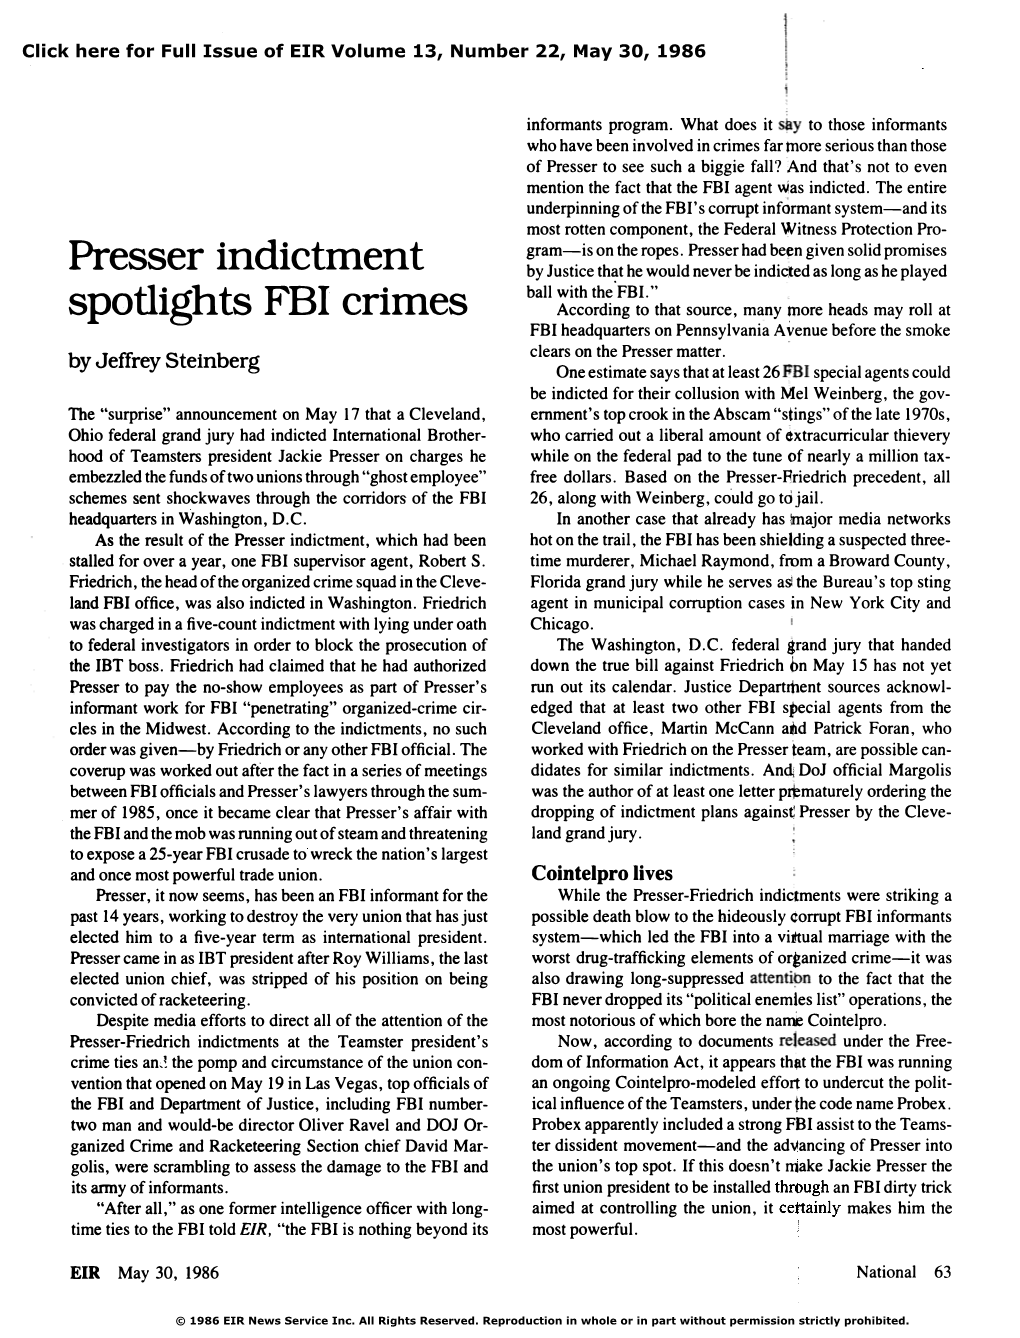 Presser Indictment Spotlights FBI Crimes